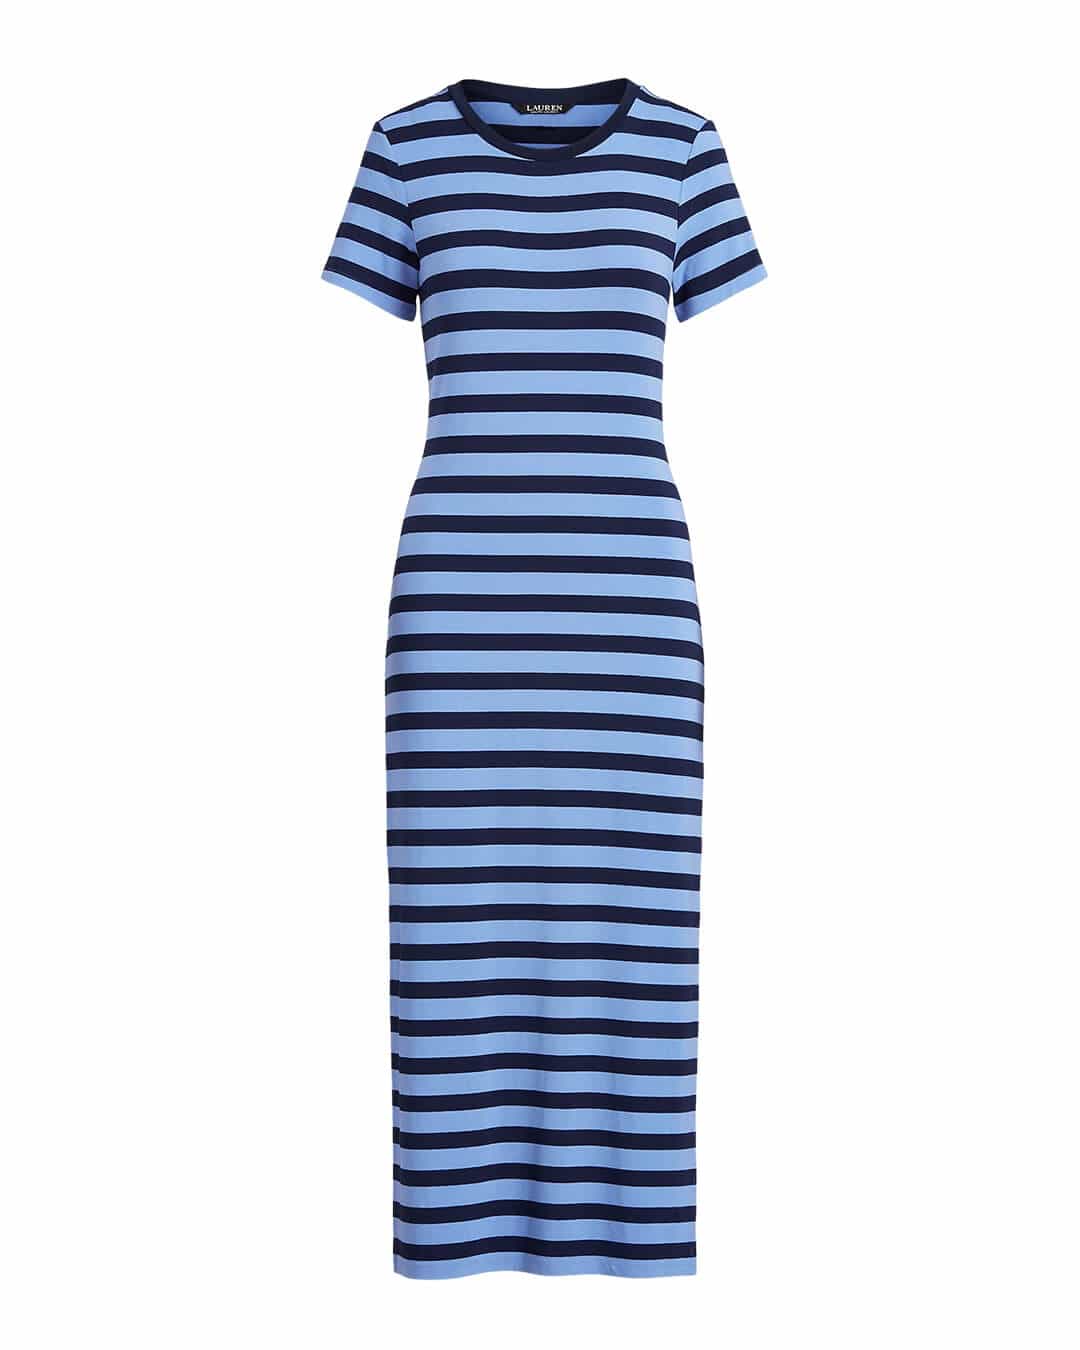 Lauren By Ralph Lauren Dresses Lauren By Ralph Lauren Sky And Navy Blue Striped Day Dress